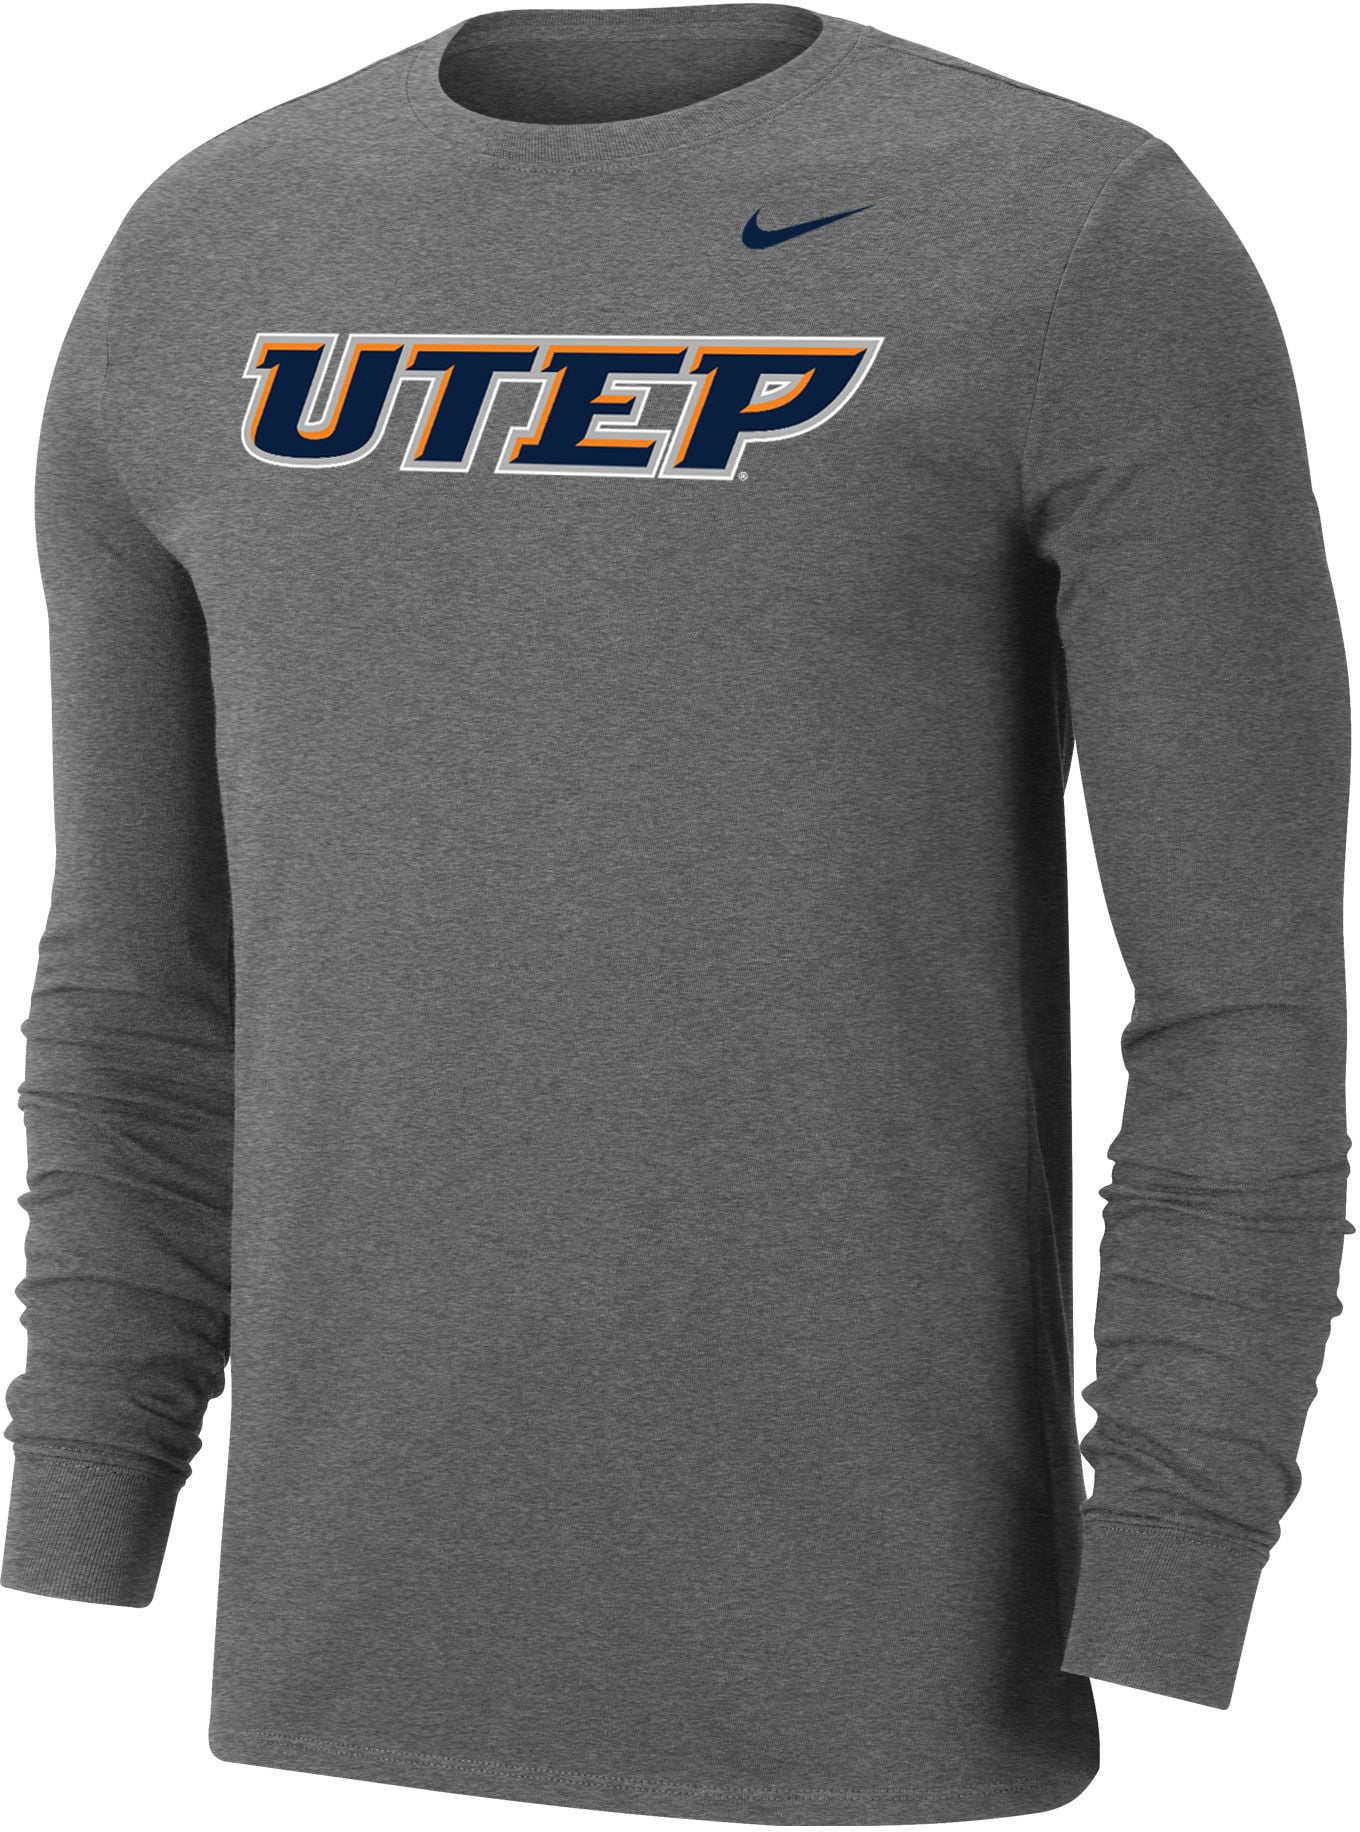 Nike - Nike Men's UTEP Miners Grey Wordmark Long Sleeve T-Shirt ...